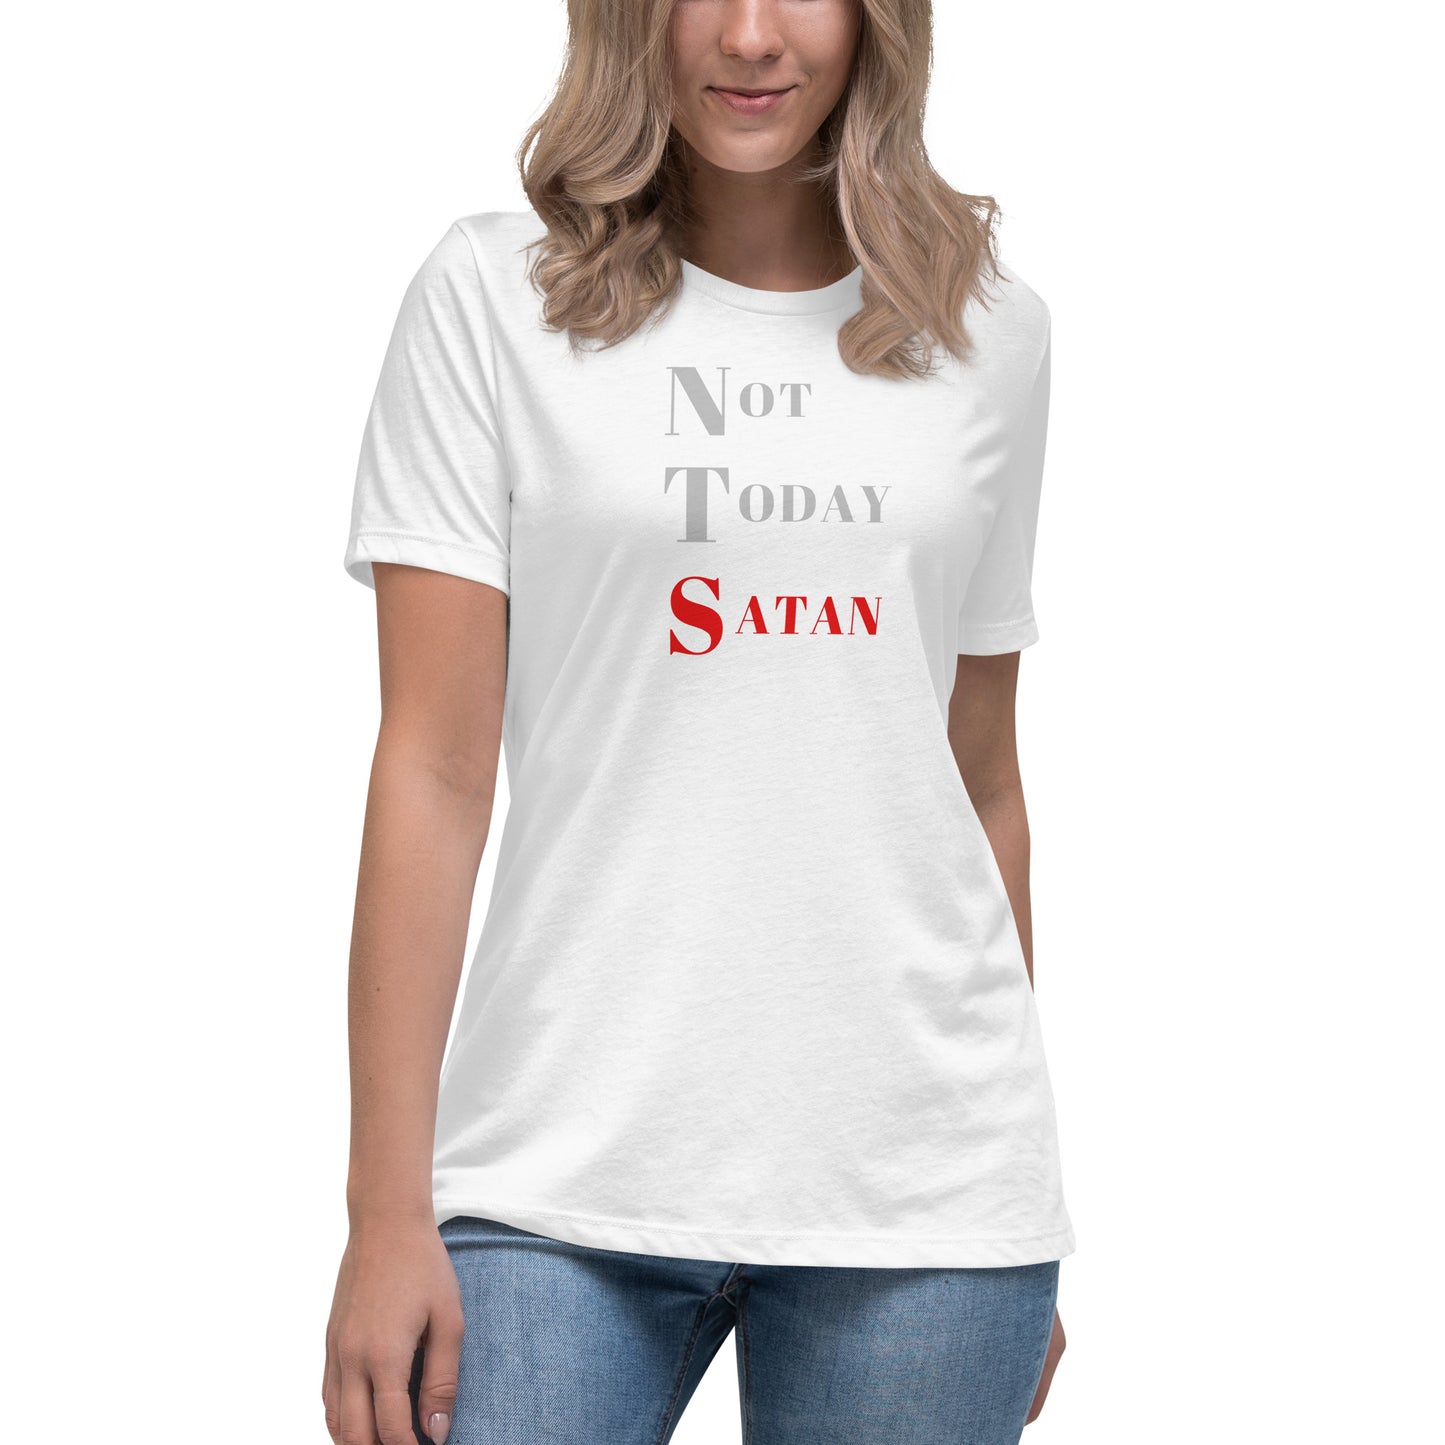 Not Today Satan Women's Relaxed T-Shirt